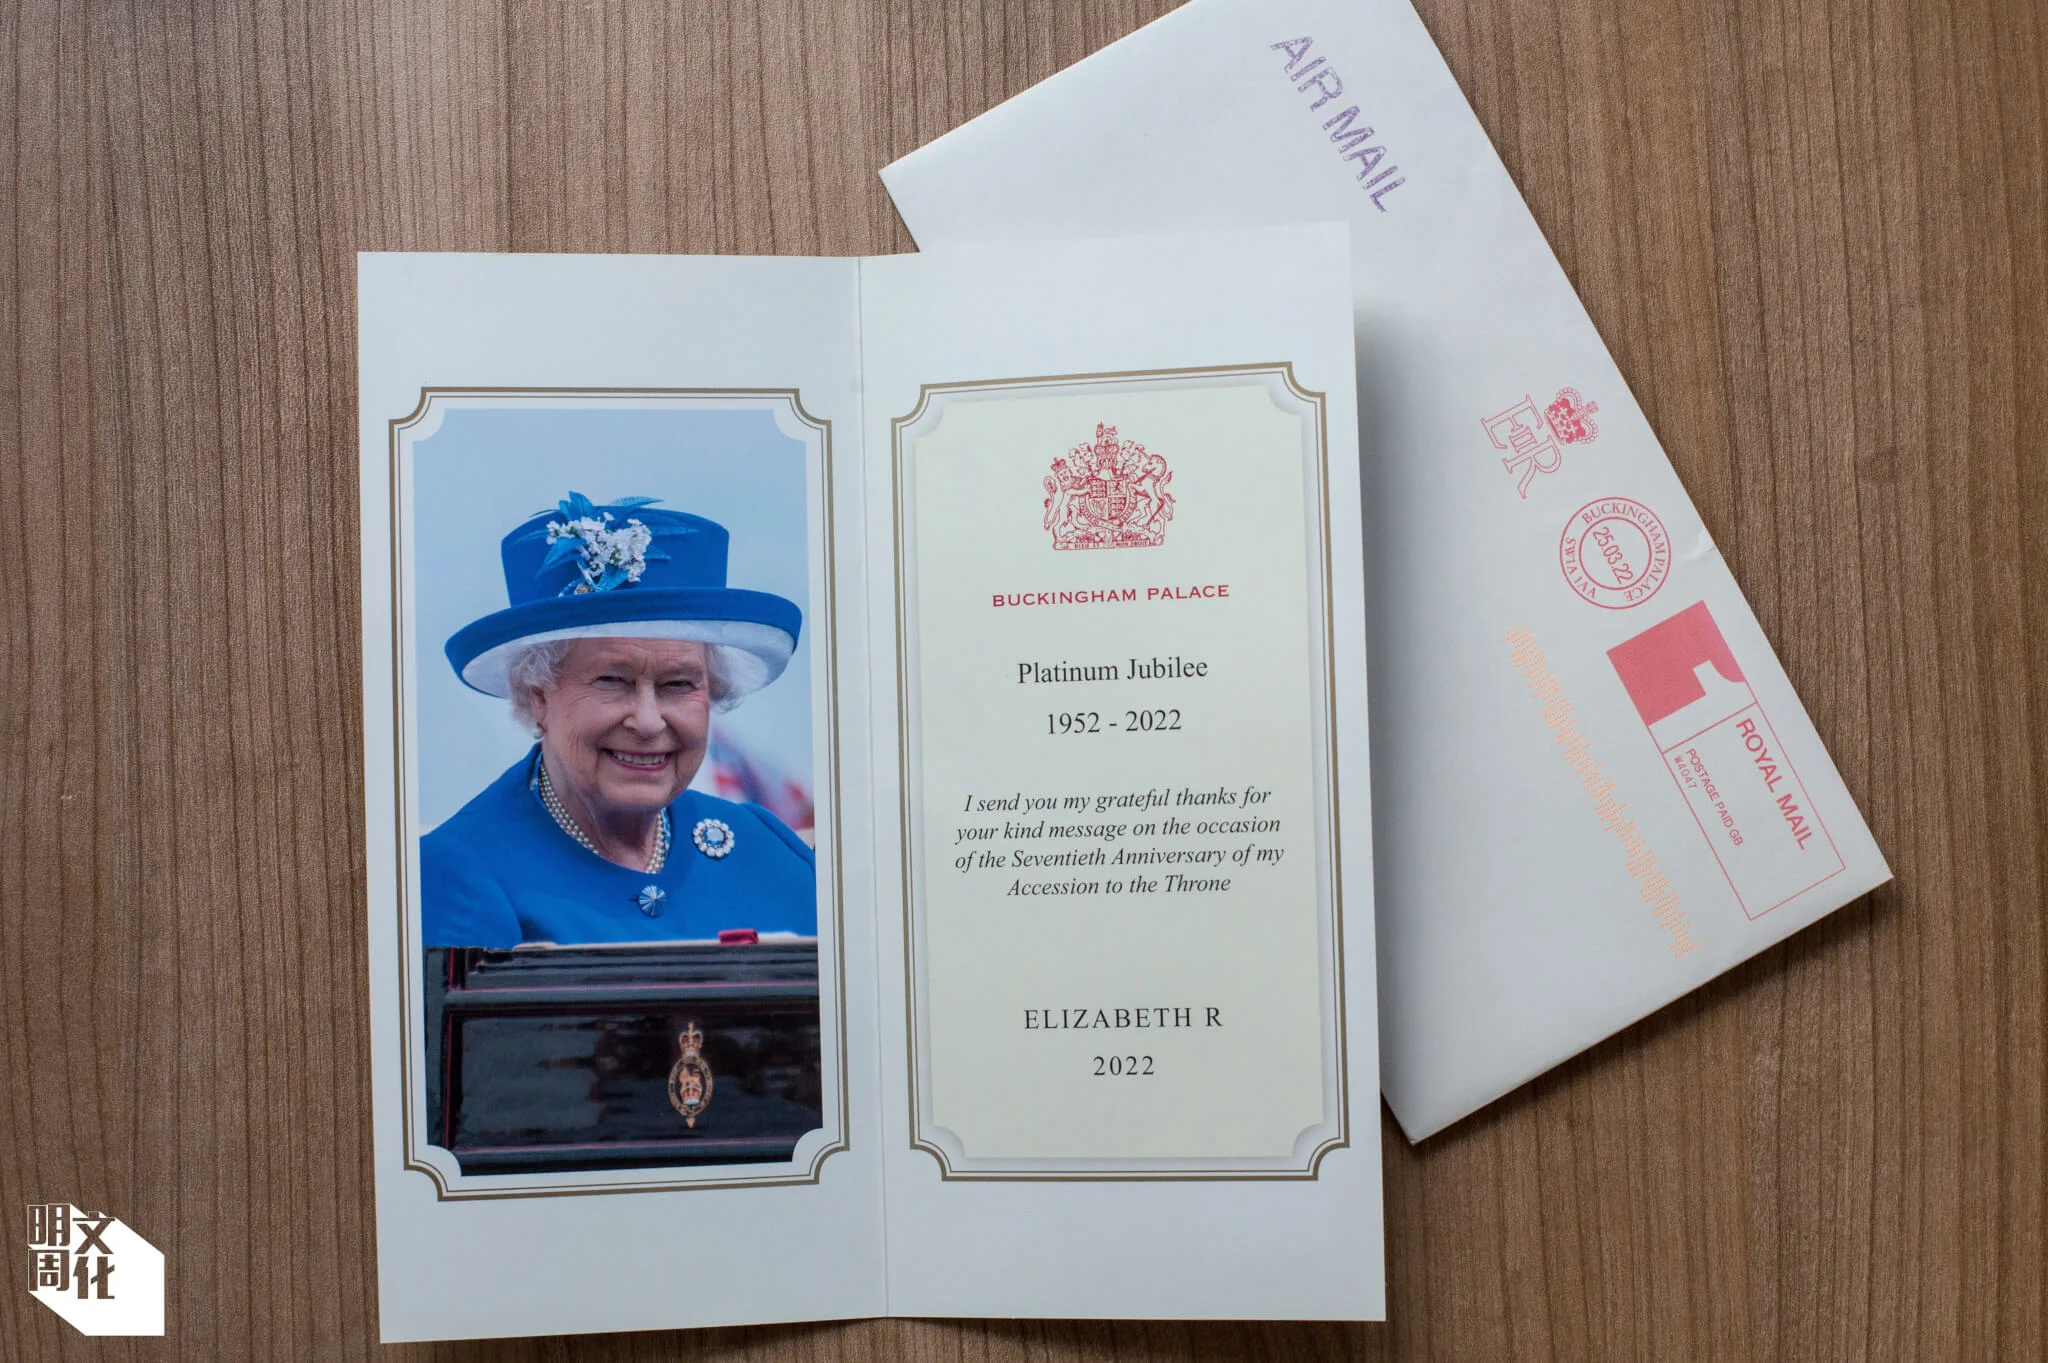 英國皇室的回覆通常都是打印一封信或卡，格式嚴謹，予Miranda正式和單一之感。回信總會印有王家徽章（coat of arms），顏色以紅、藍、黑為主。